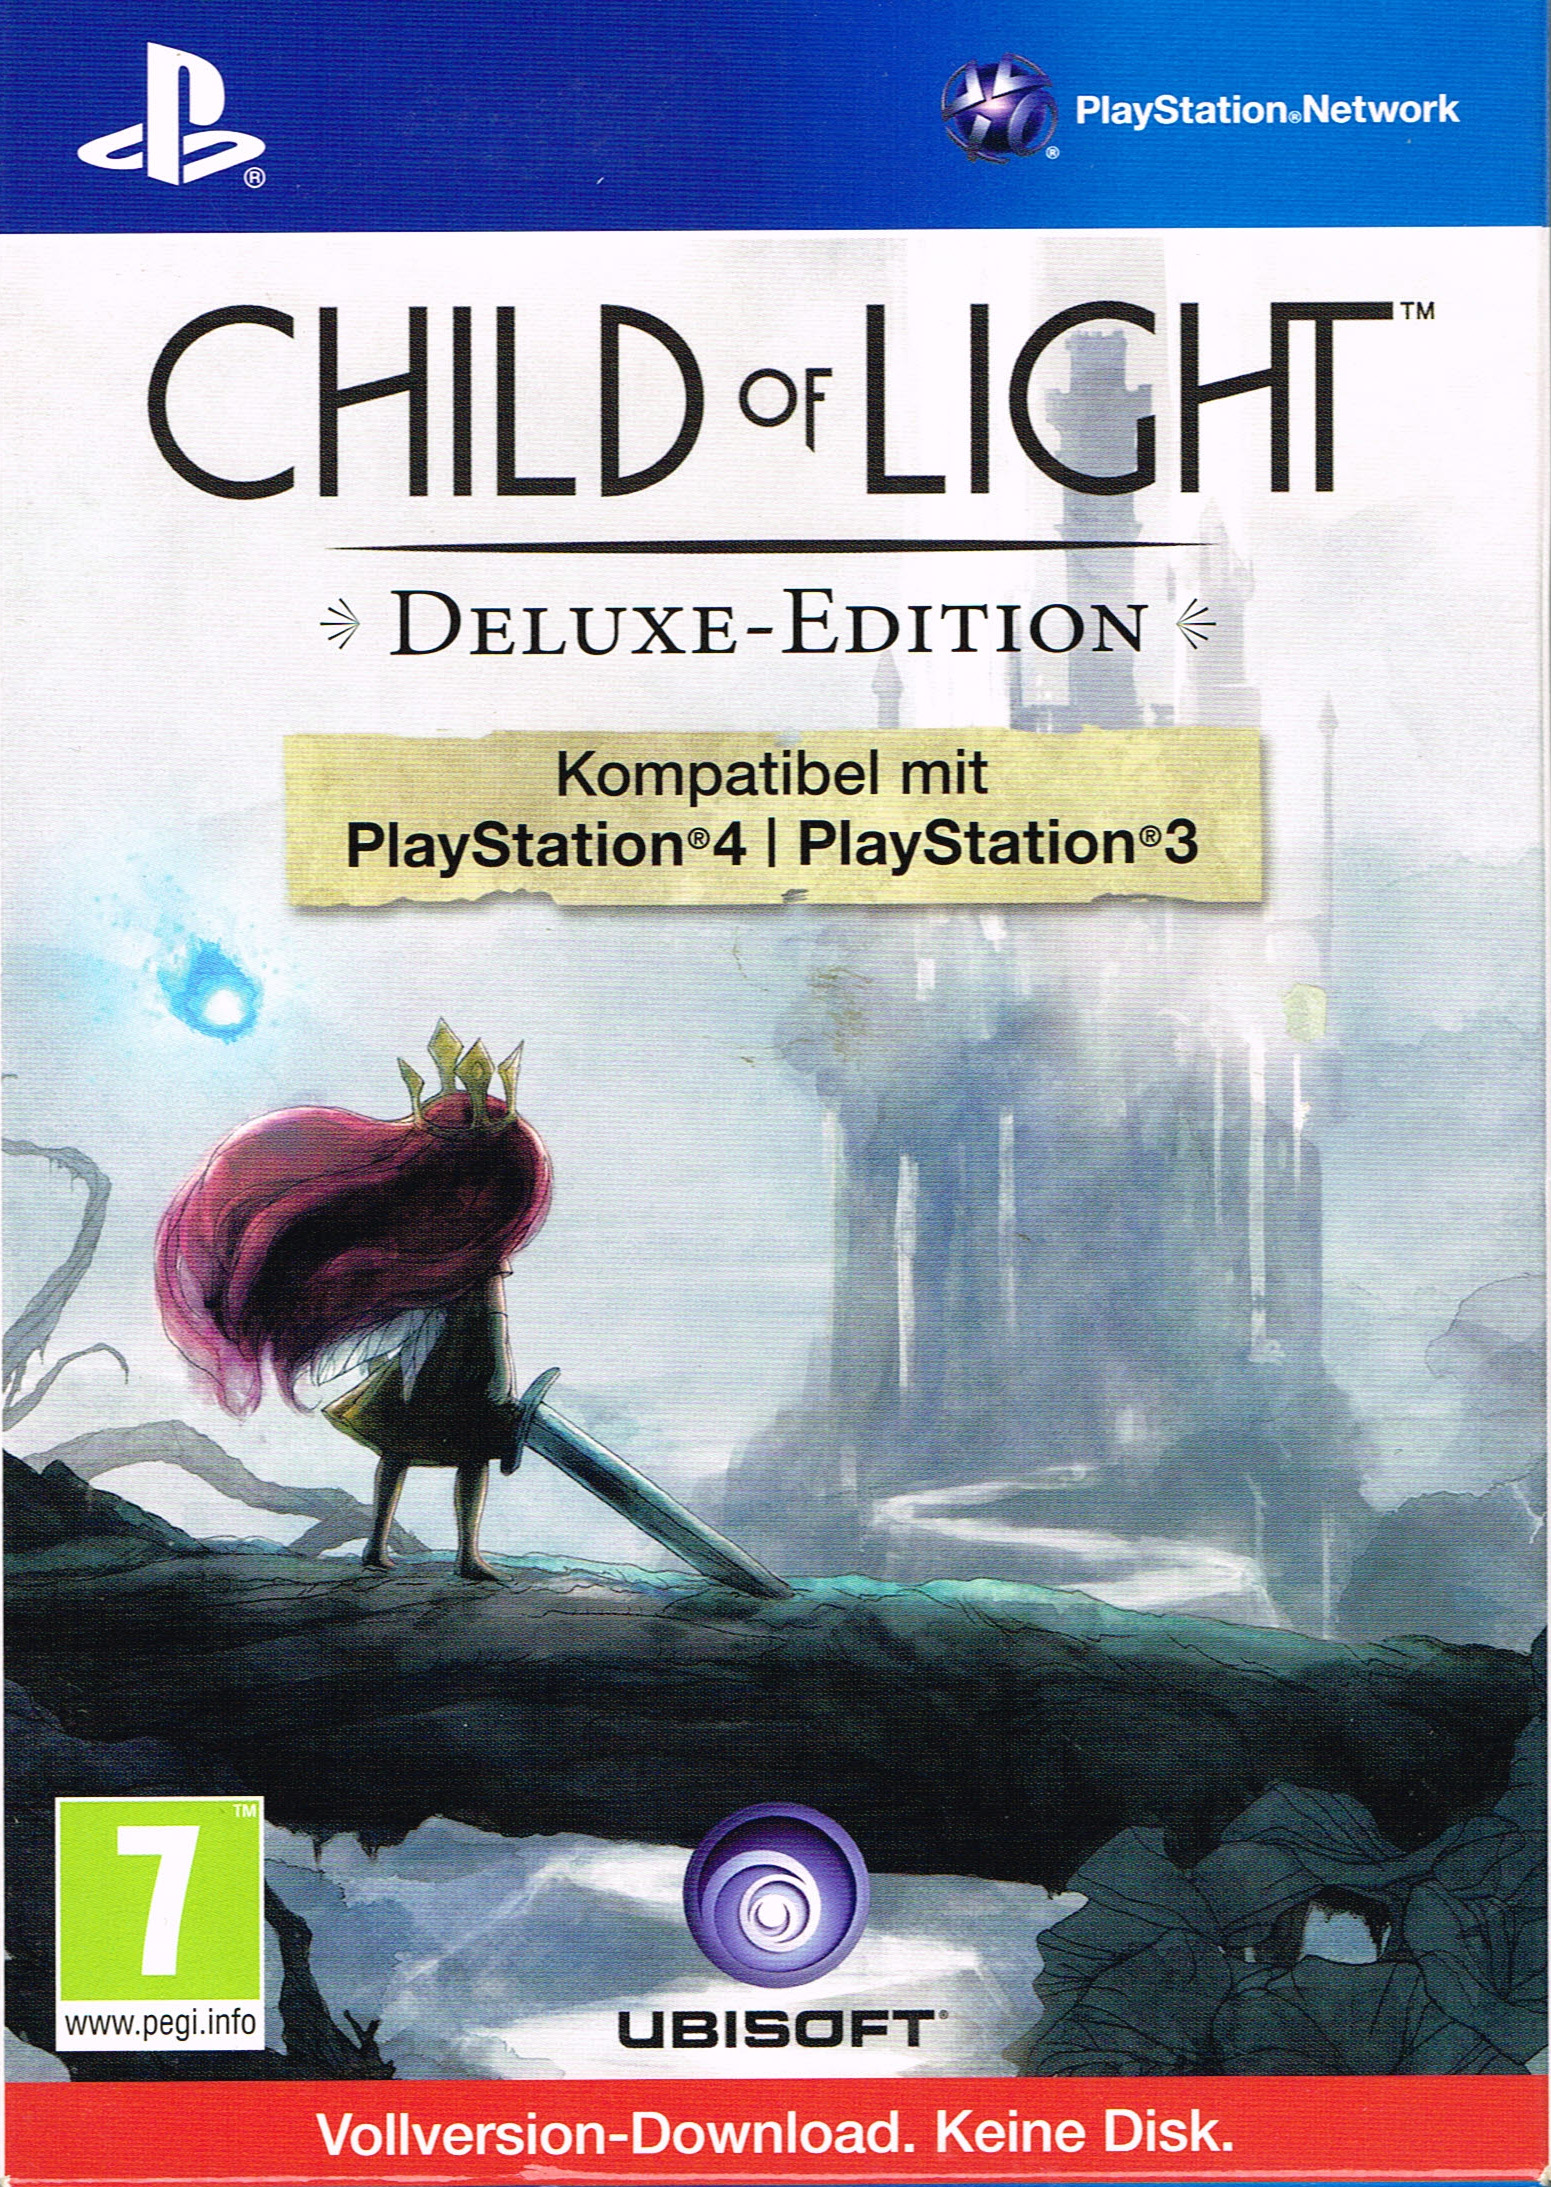 Child of light отзывы. Игра PLAYSTATION child of Light. Игра child of Light на Xbox 360. Дитя света игра. Child of Light. Deluxe Edition.